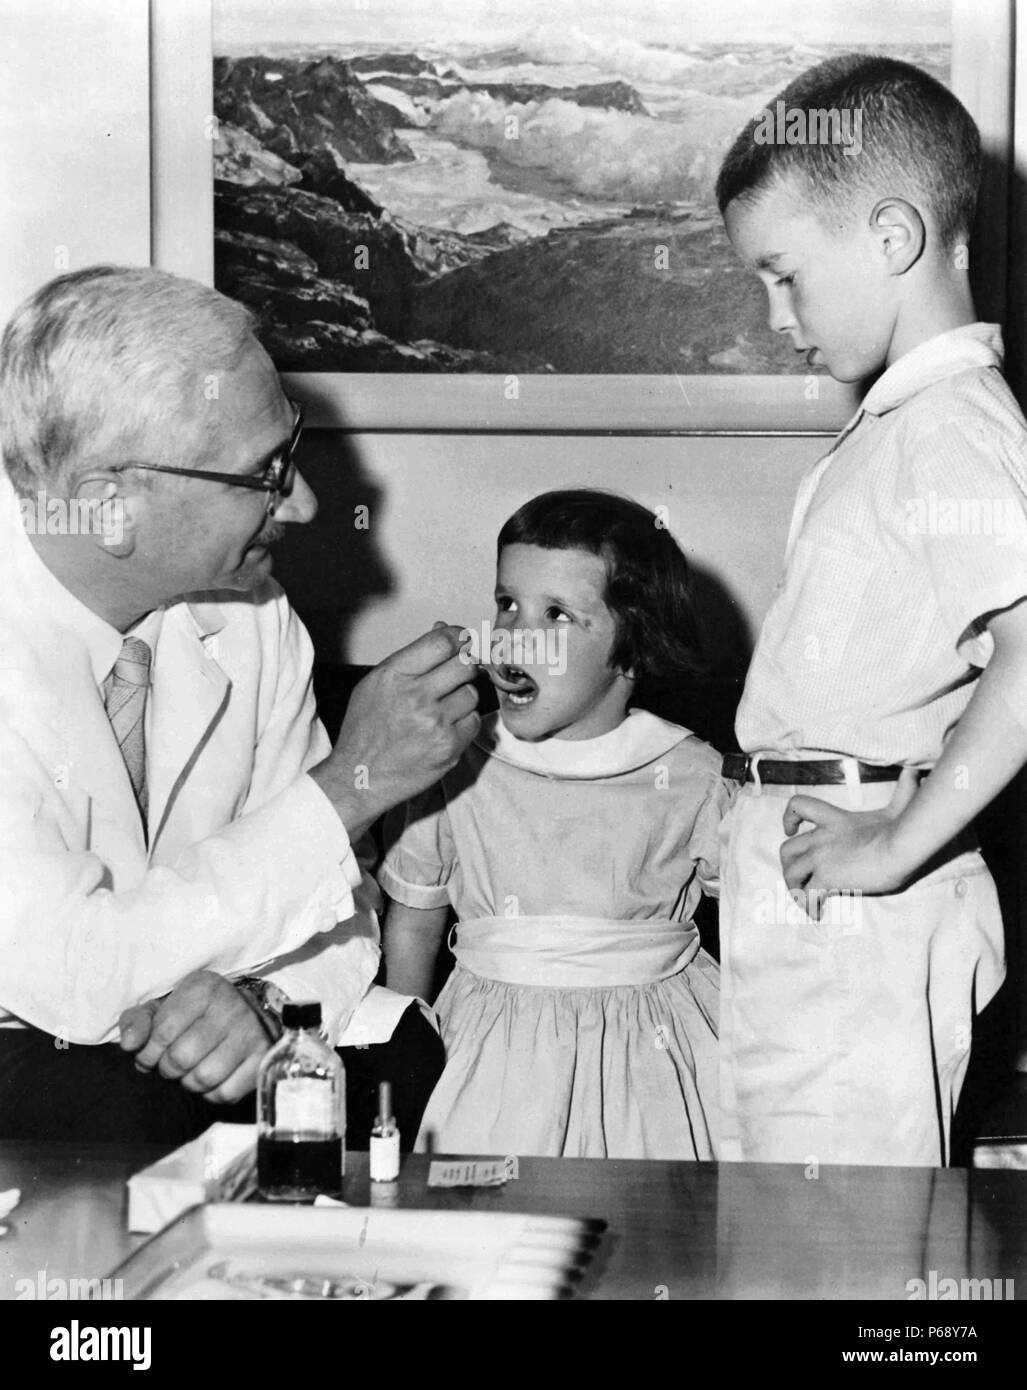 Photographie de Bruce Albert Sabin (1906-1993) un Polonais Juif chercheur médical américain surtout connu pour avoir mis au point un vaccin oral contre la polio. Dr Albert Sabin est vue ici l'administration du vaccin antipoliomyélitique oral à deux enfants. Datée 1966 Banque D'Images